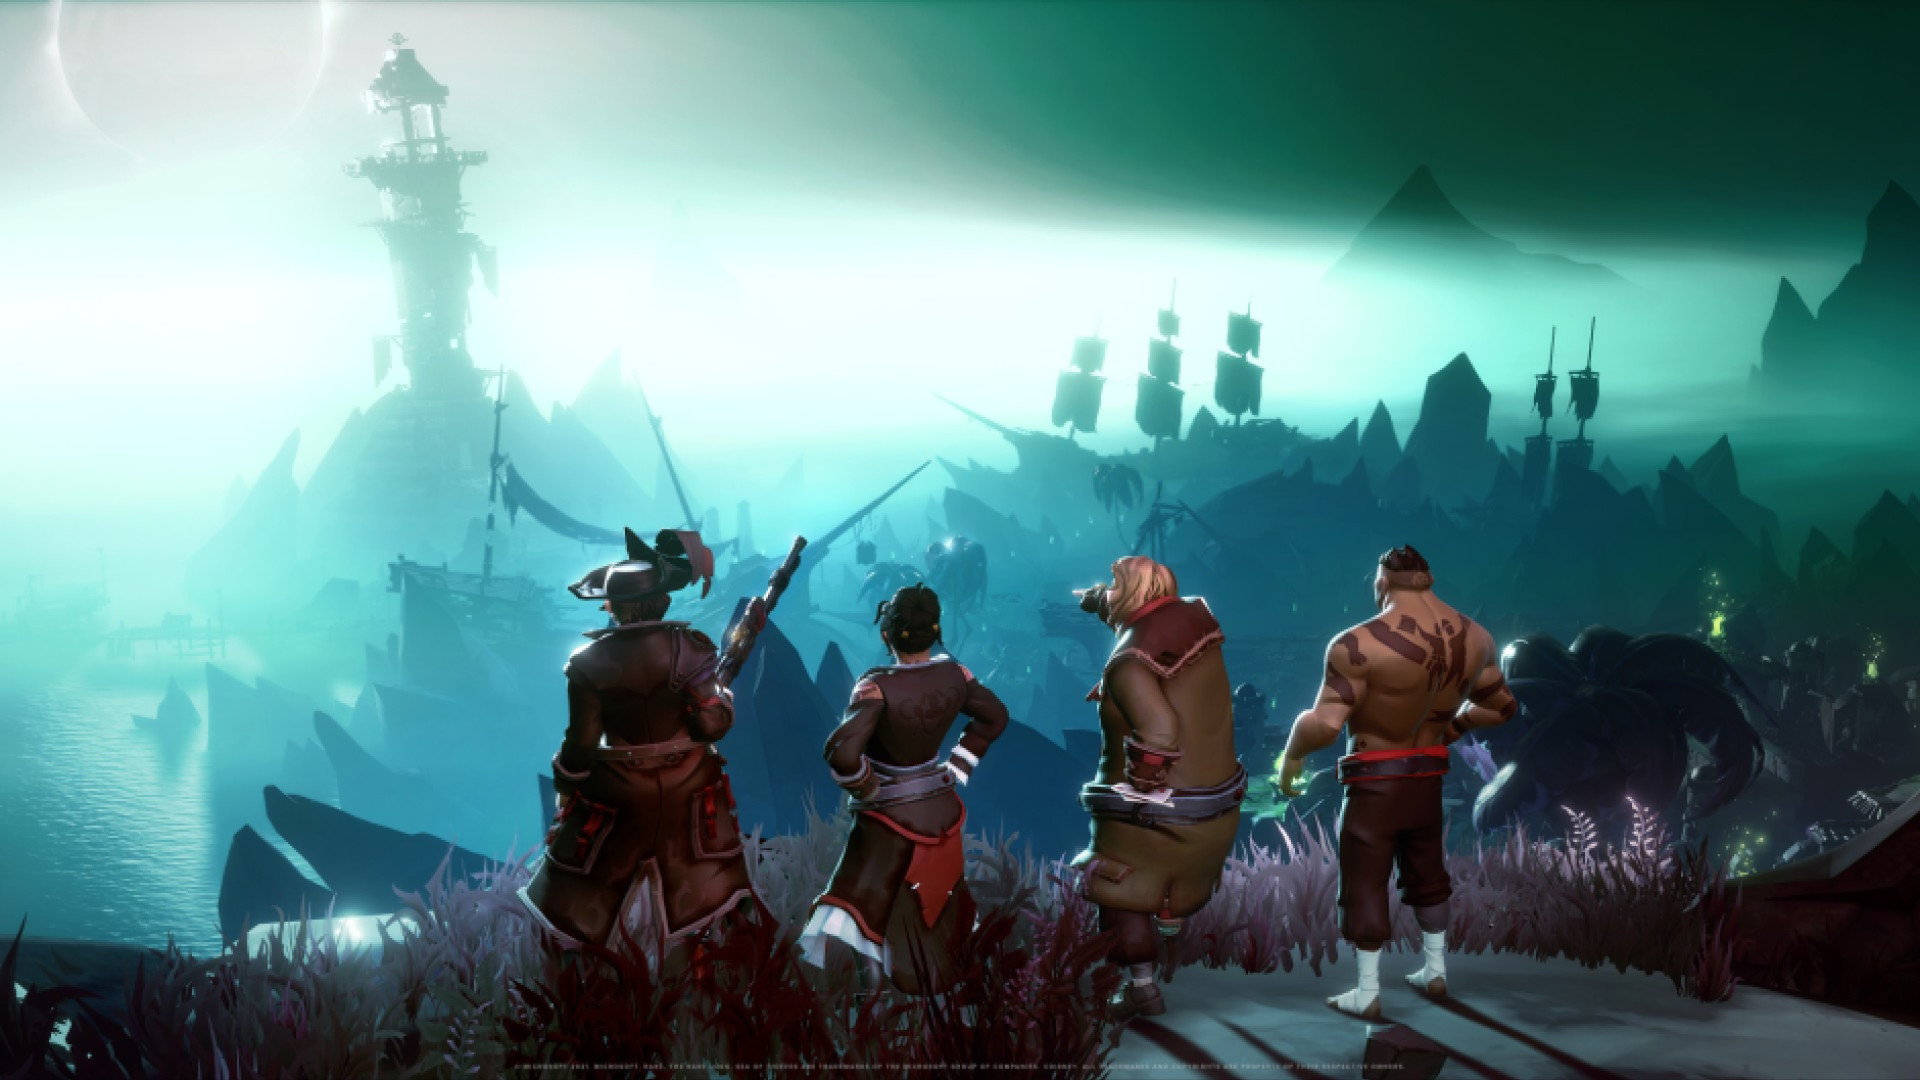 بازی Sea of Thieves: A Pirate’s Life پرفروش ترین بازی پلتفرم Steam